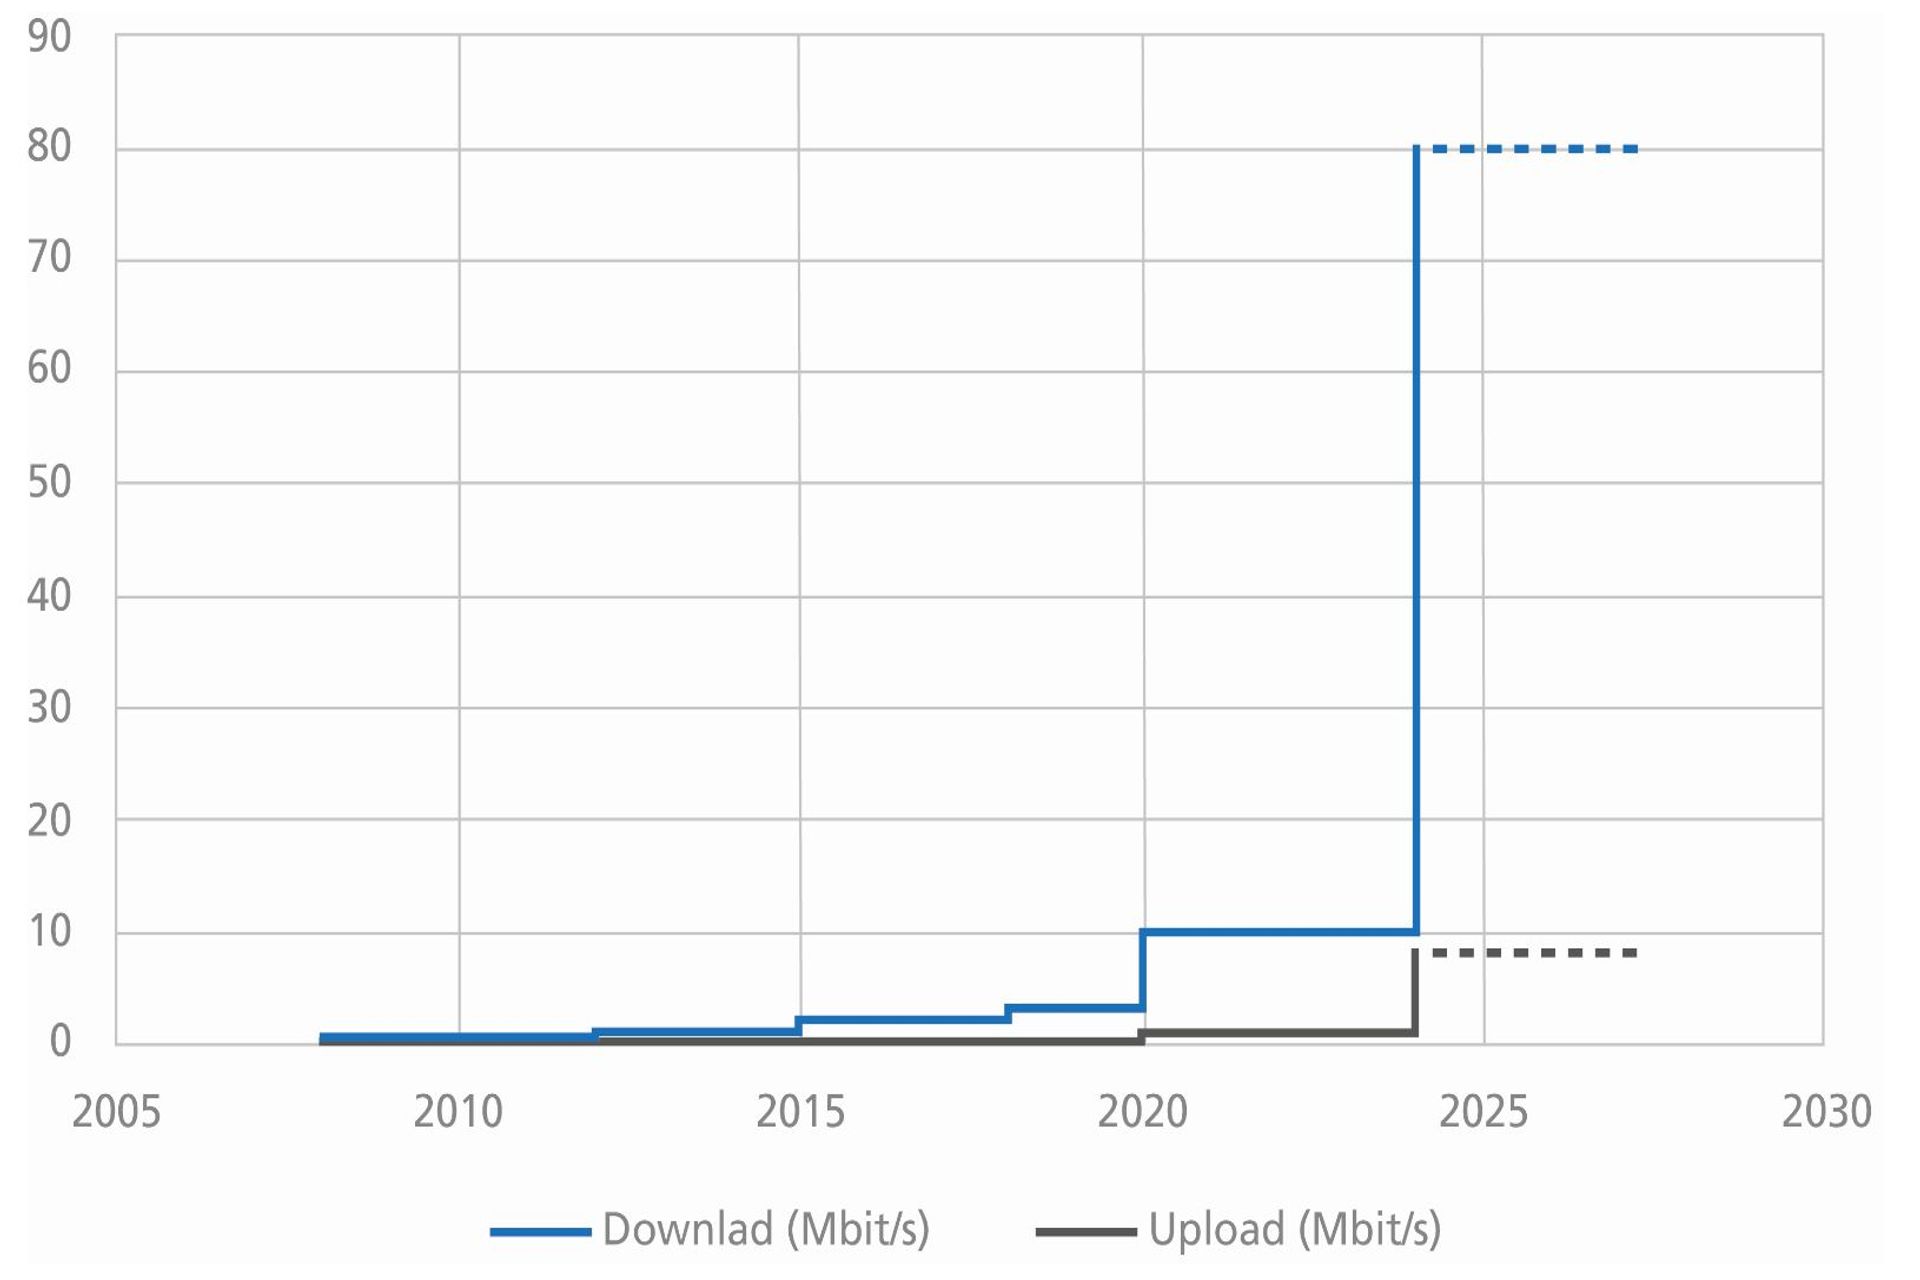 L'attesa crescita della velocità di connessione a Internet in Svizzera nel 2024: da 80 a 10/1 Mbit/s